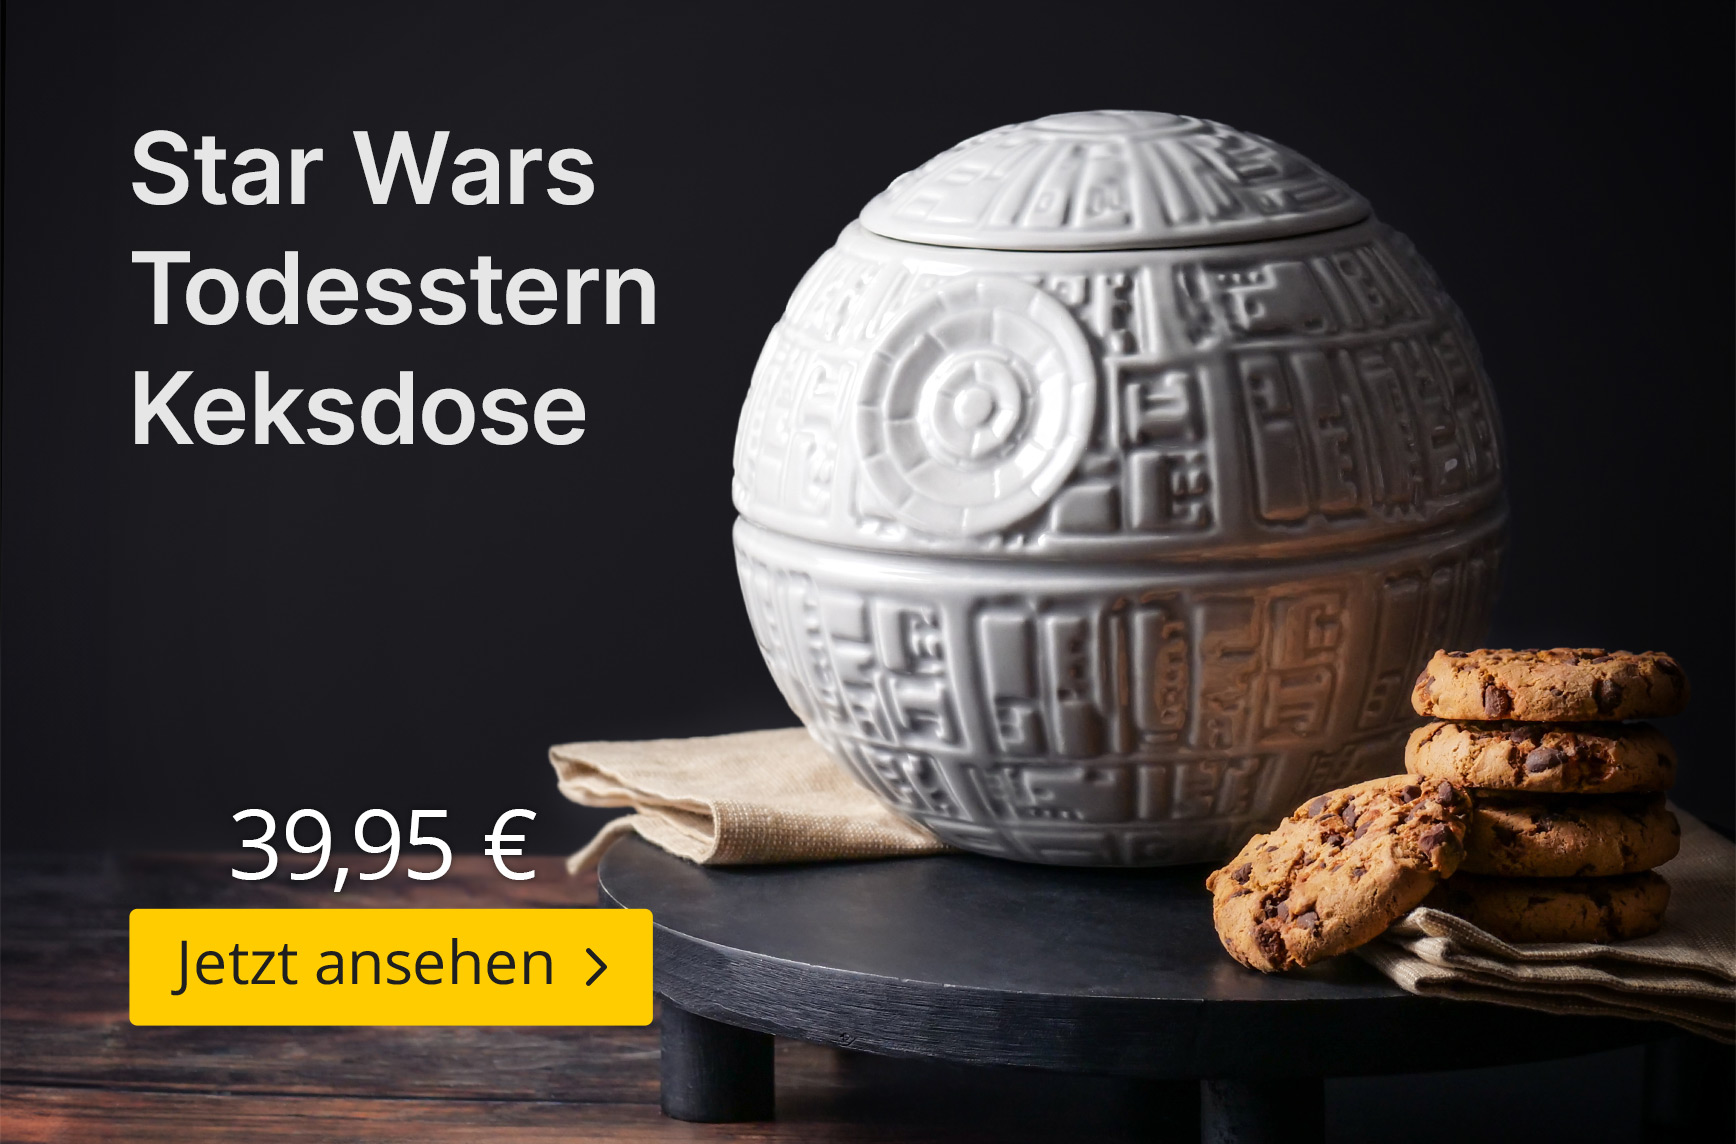 Star Wars Todesstern Keksdose - 39,95€